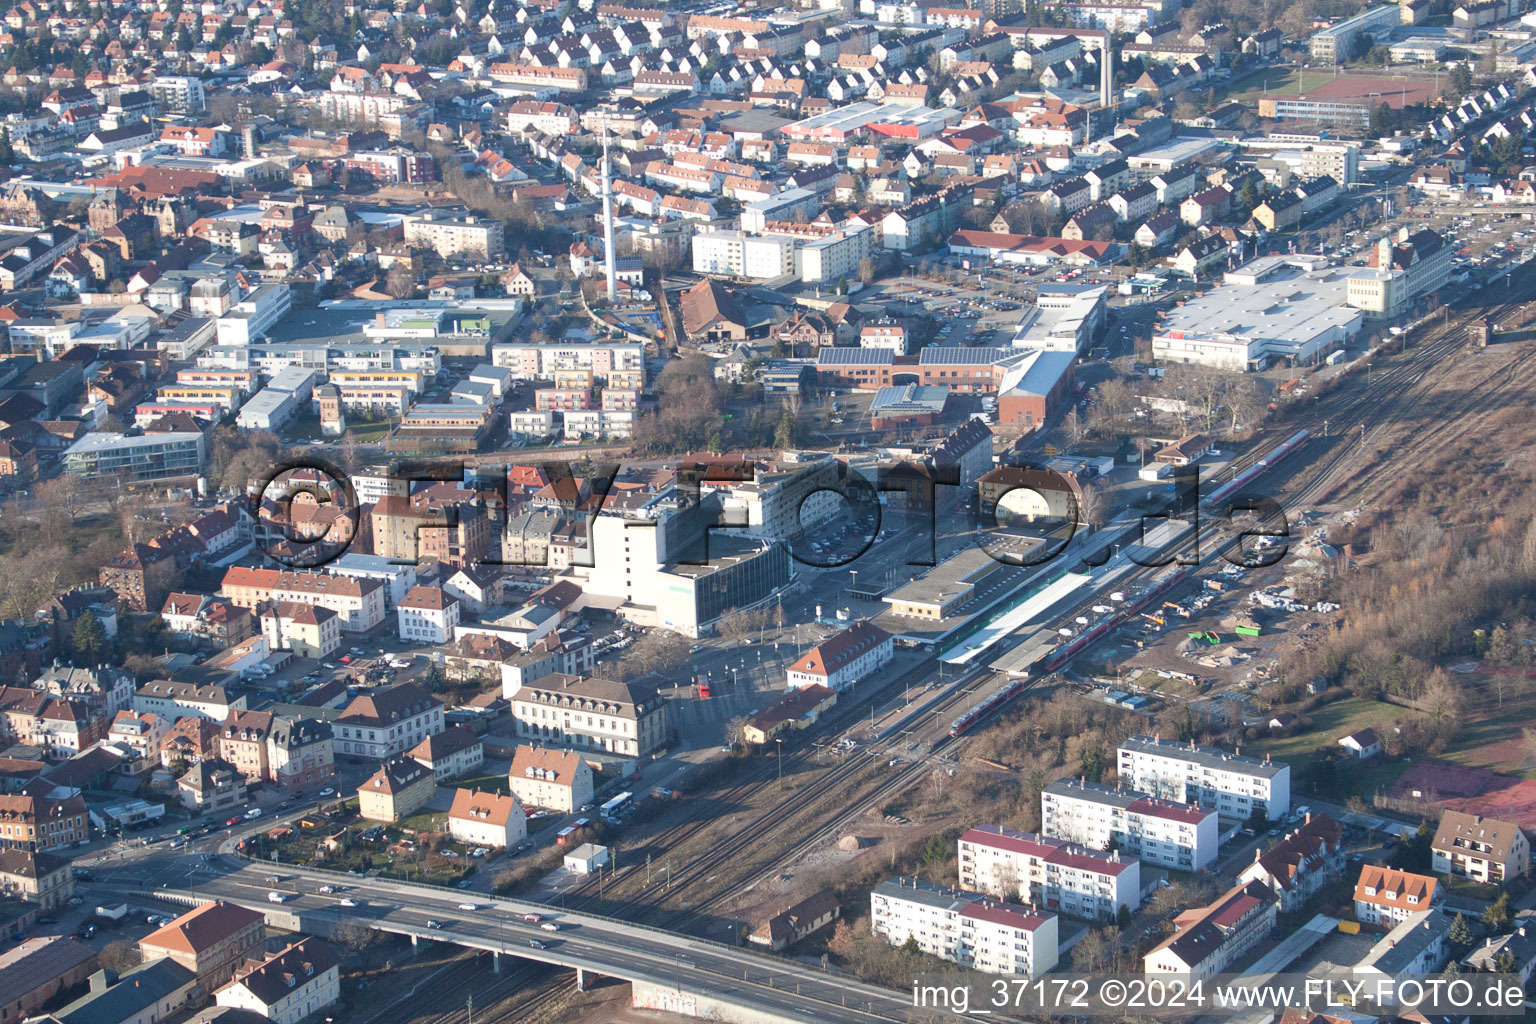 Luftbild von Bahnhof in Landau in der Pfalz im Bundesland Rheinland-Pfalz, Deutschland